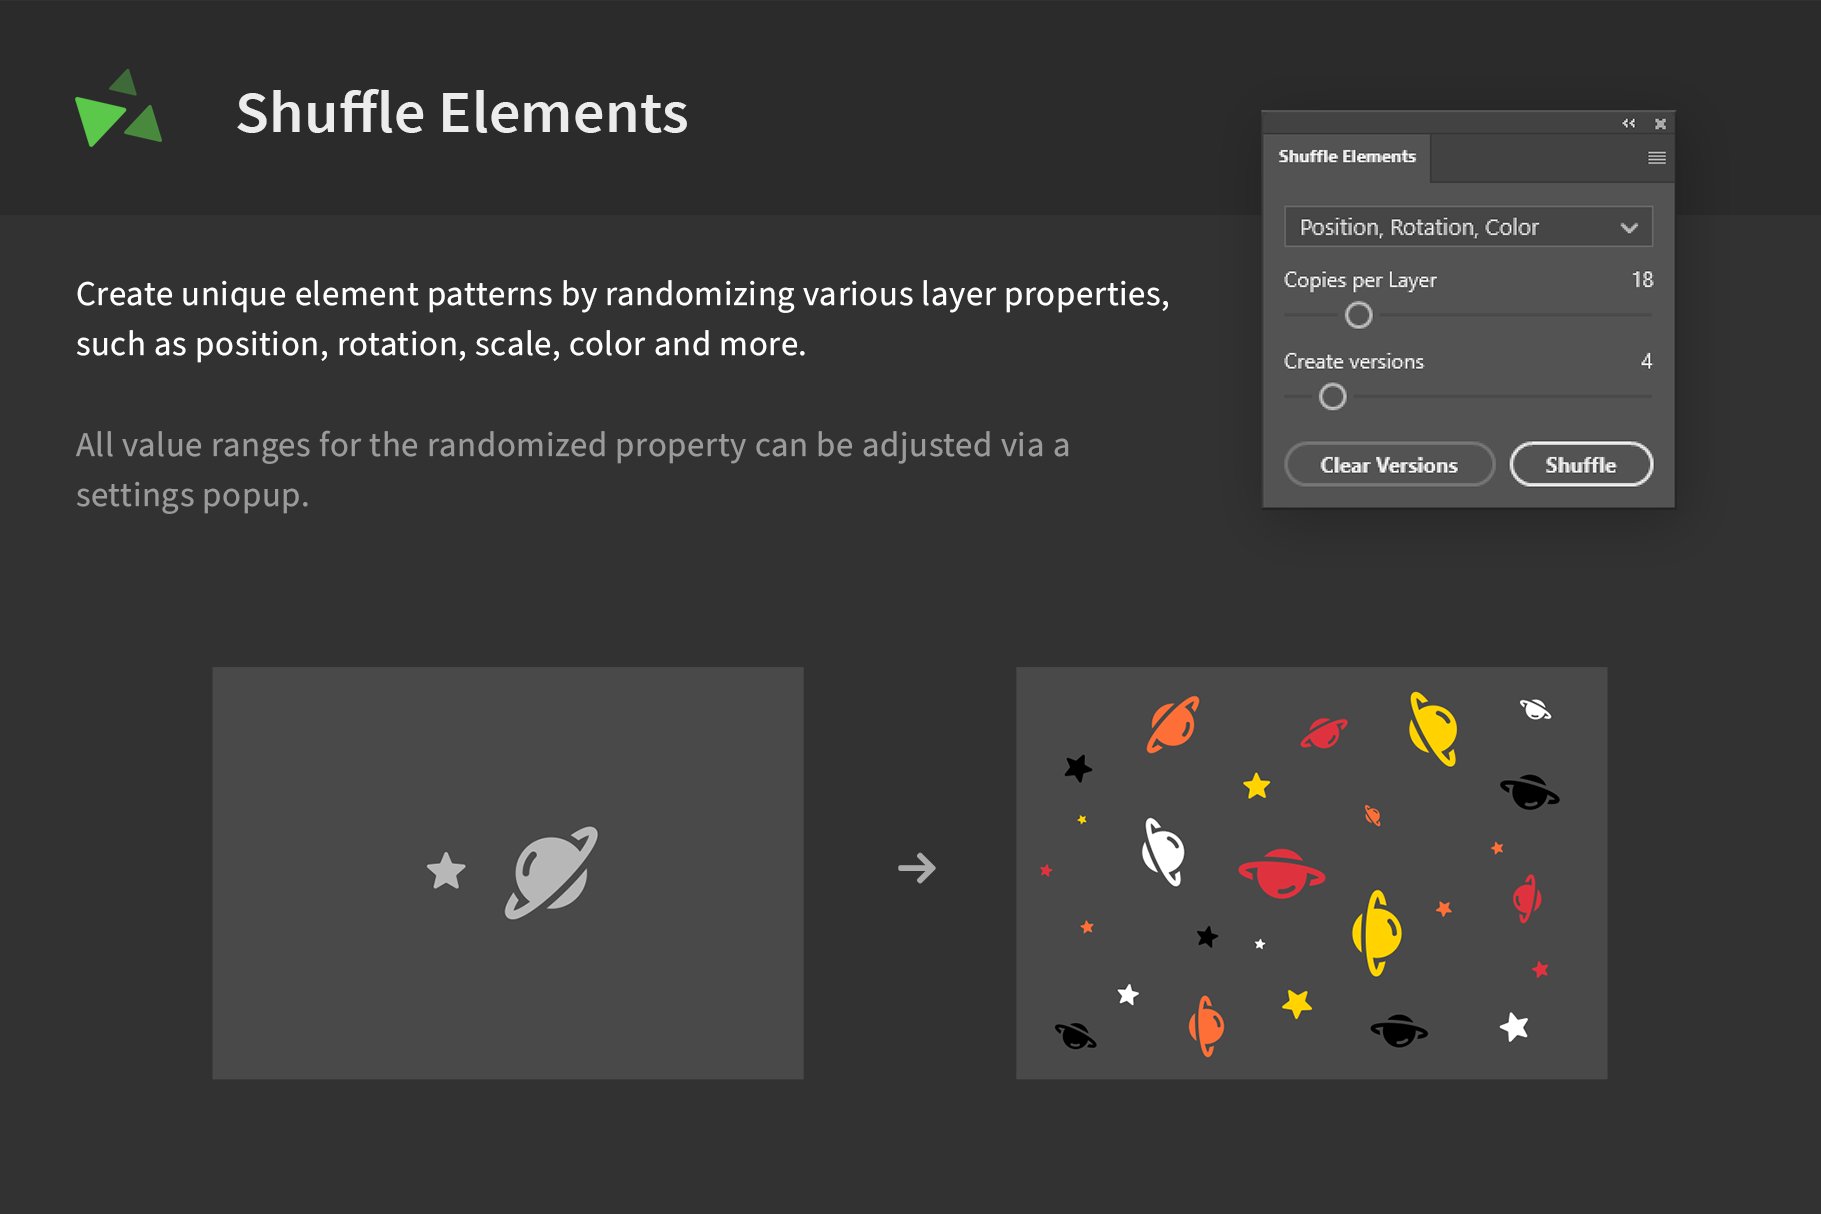 Shuffle Elements - Randomize Layerscover image.